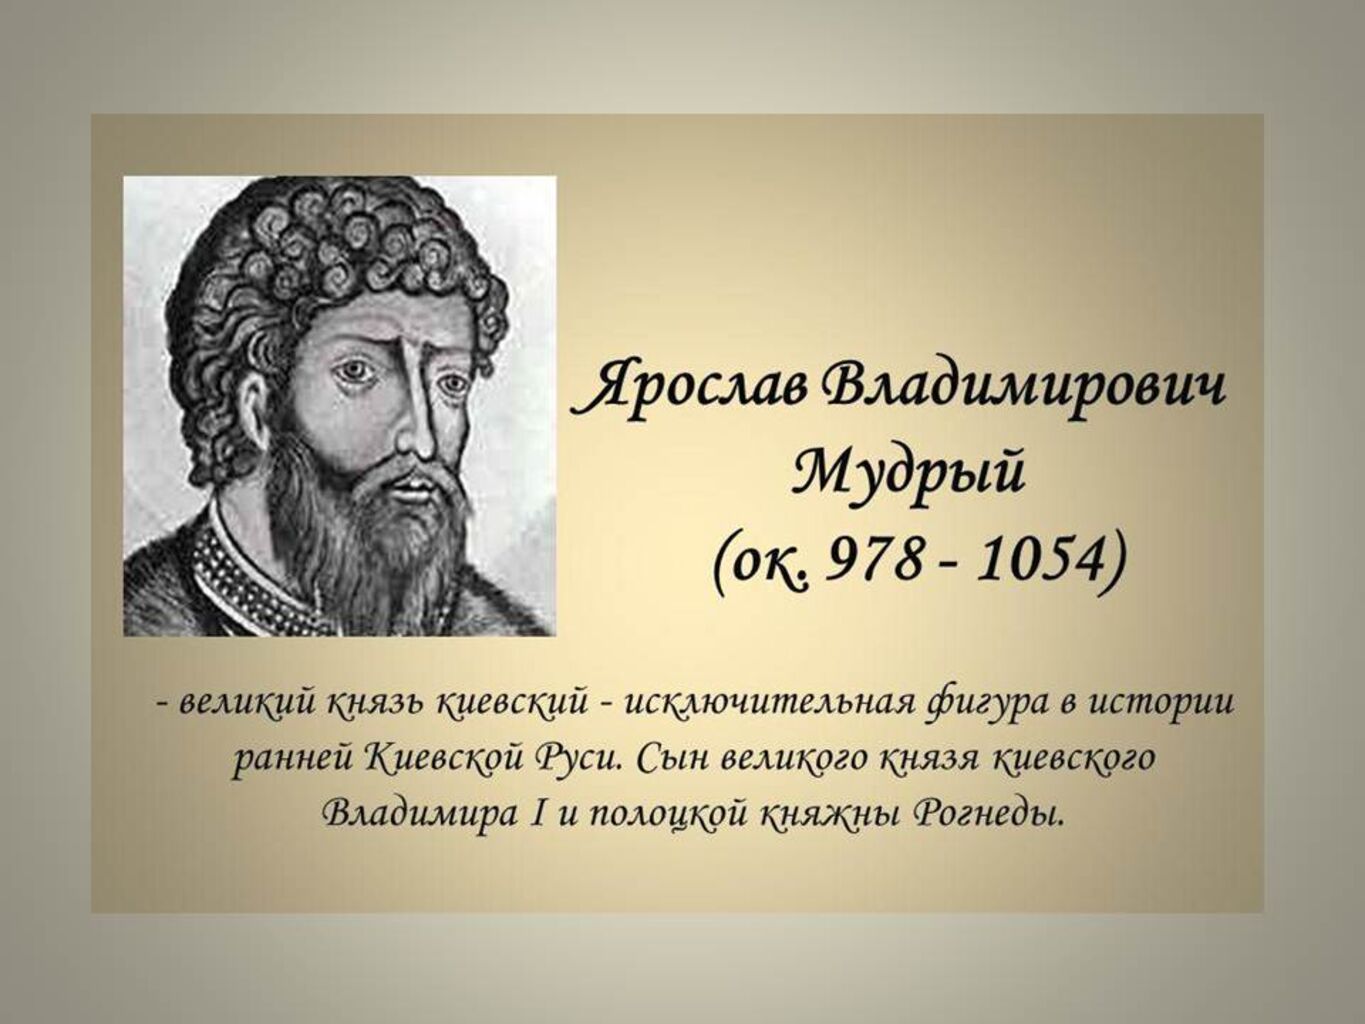 Ярослав Владимирович Мудрый (Великий князь Киевский)